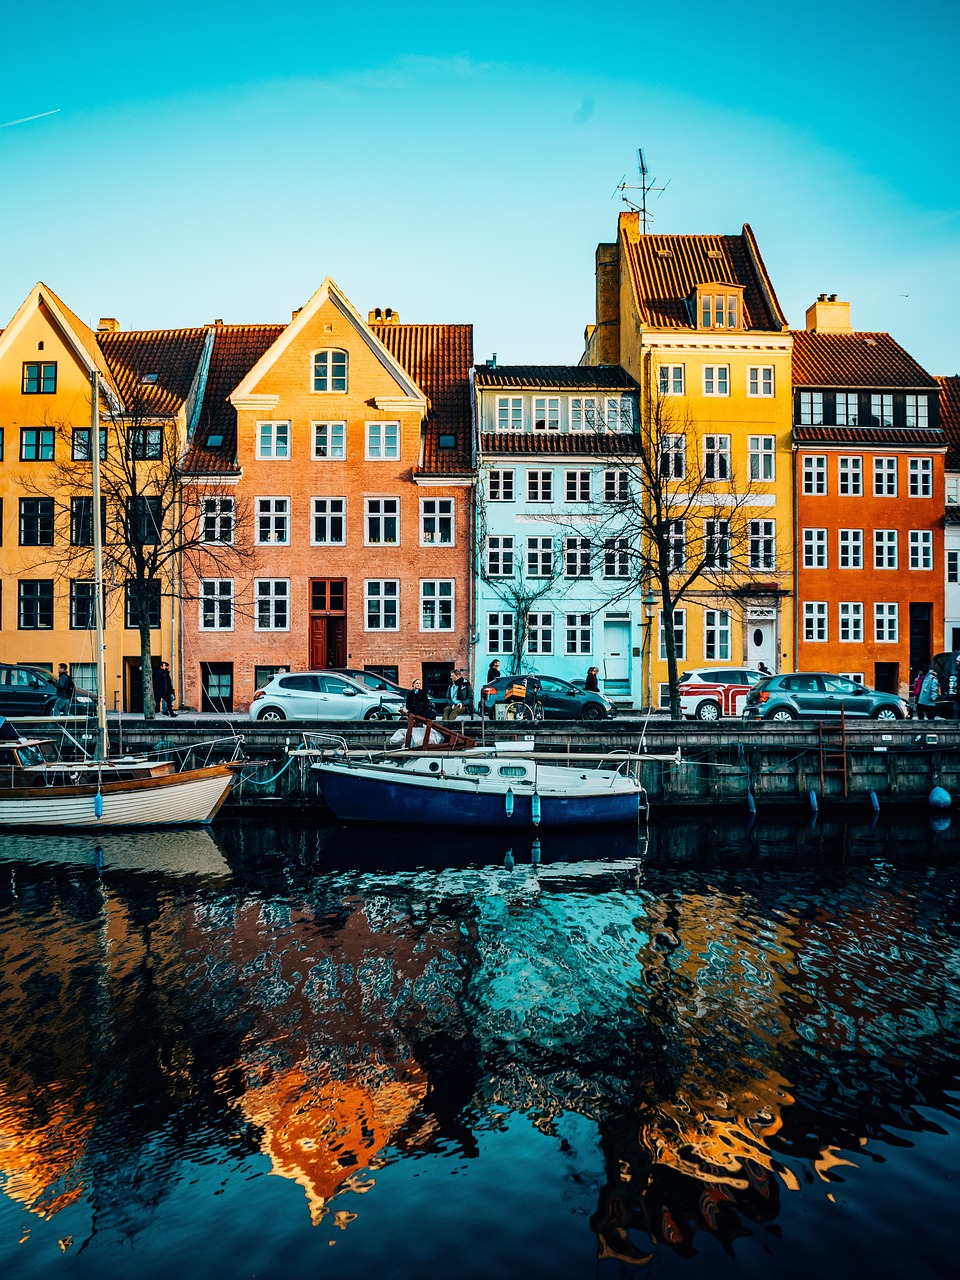 Scandinavian Delights: 10 Days in Denmark and Norway